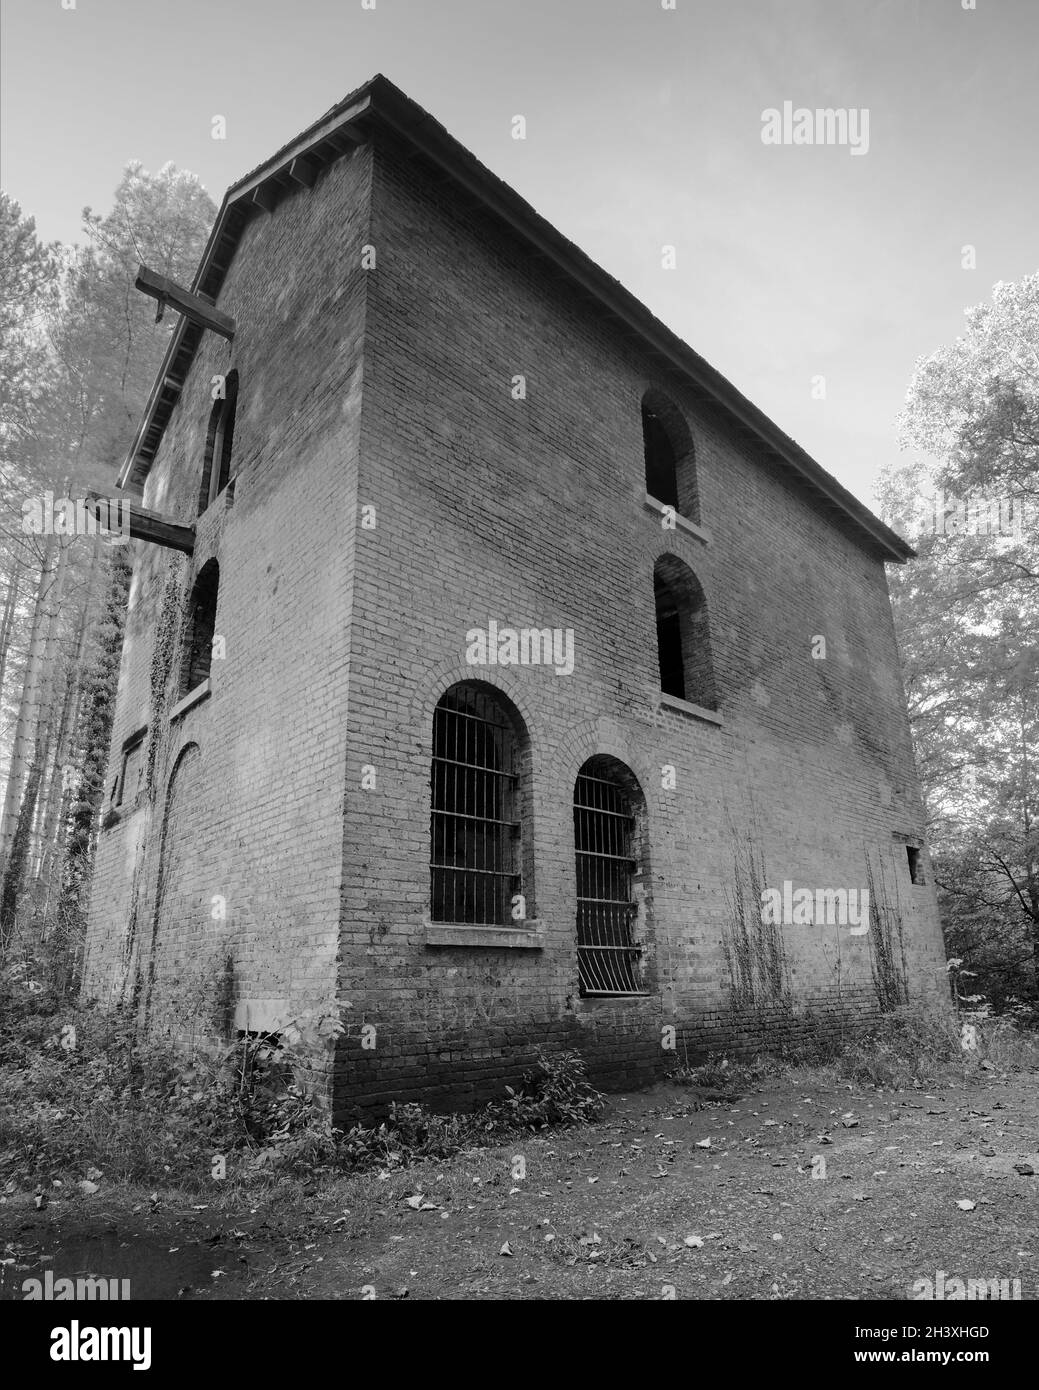 Rarement vu Engine House, abandonné en 1901 utilisé pour abriter un moteur à vapeur pour la mine de charbon Plumbley oubliée depuis longtemps.Résidant dans les bois d'Eckington. Banque D'Images